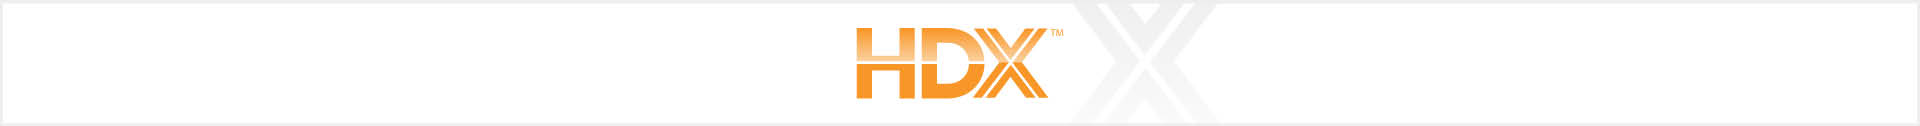 HDX Brand Banner